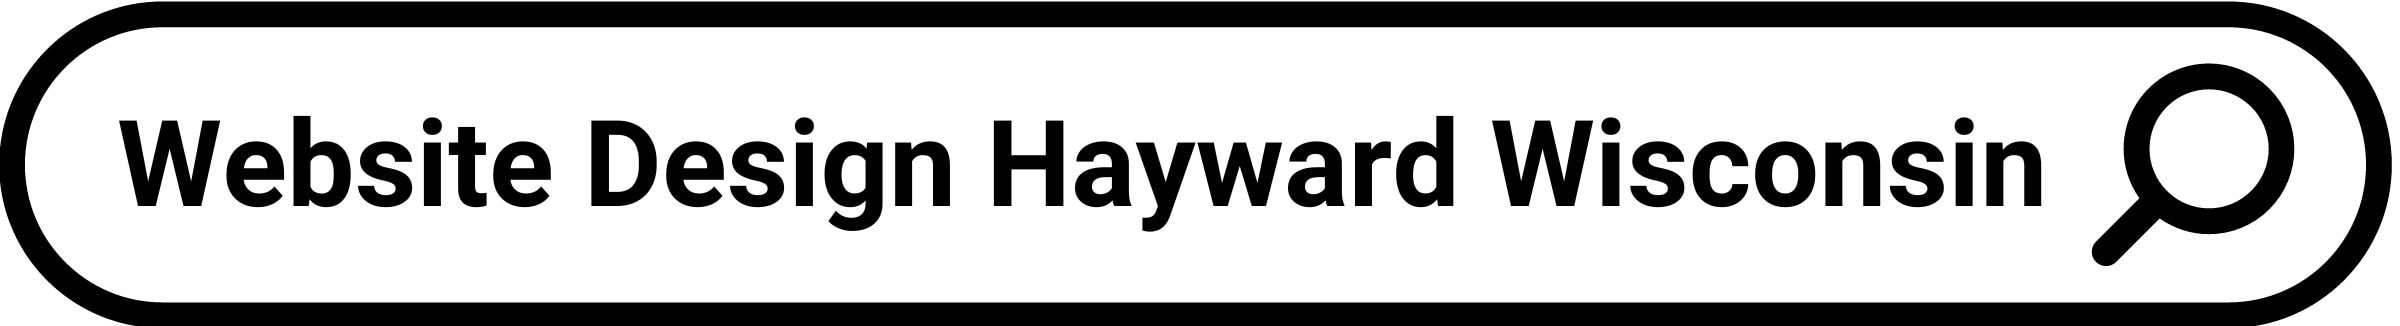 Website Design Hayward Wisconsin